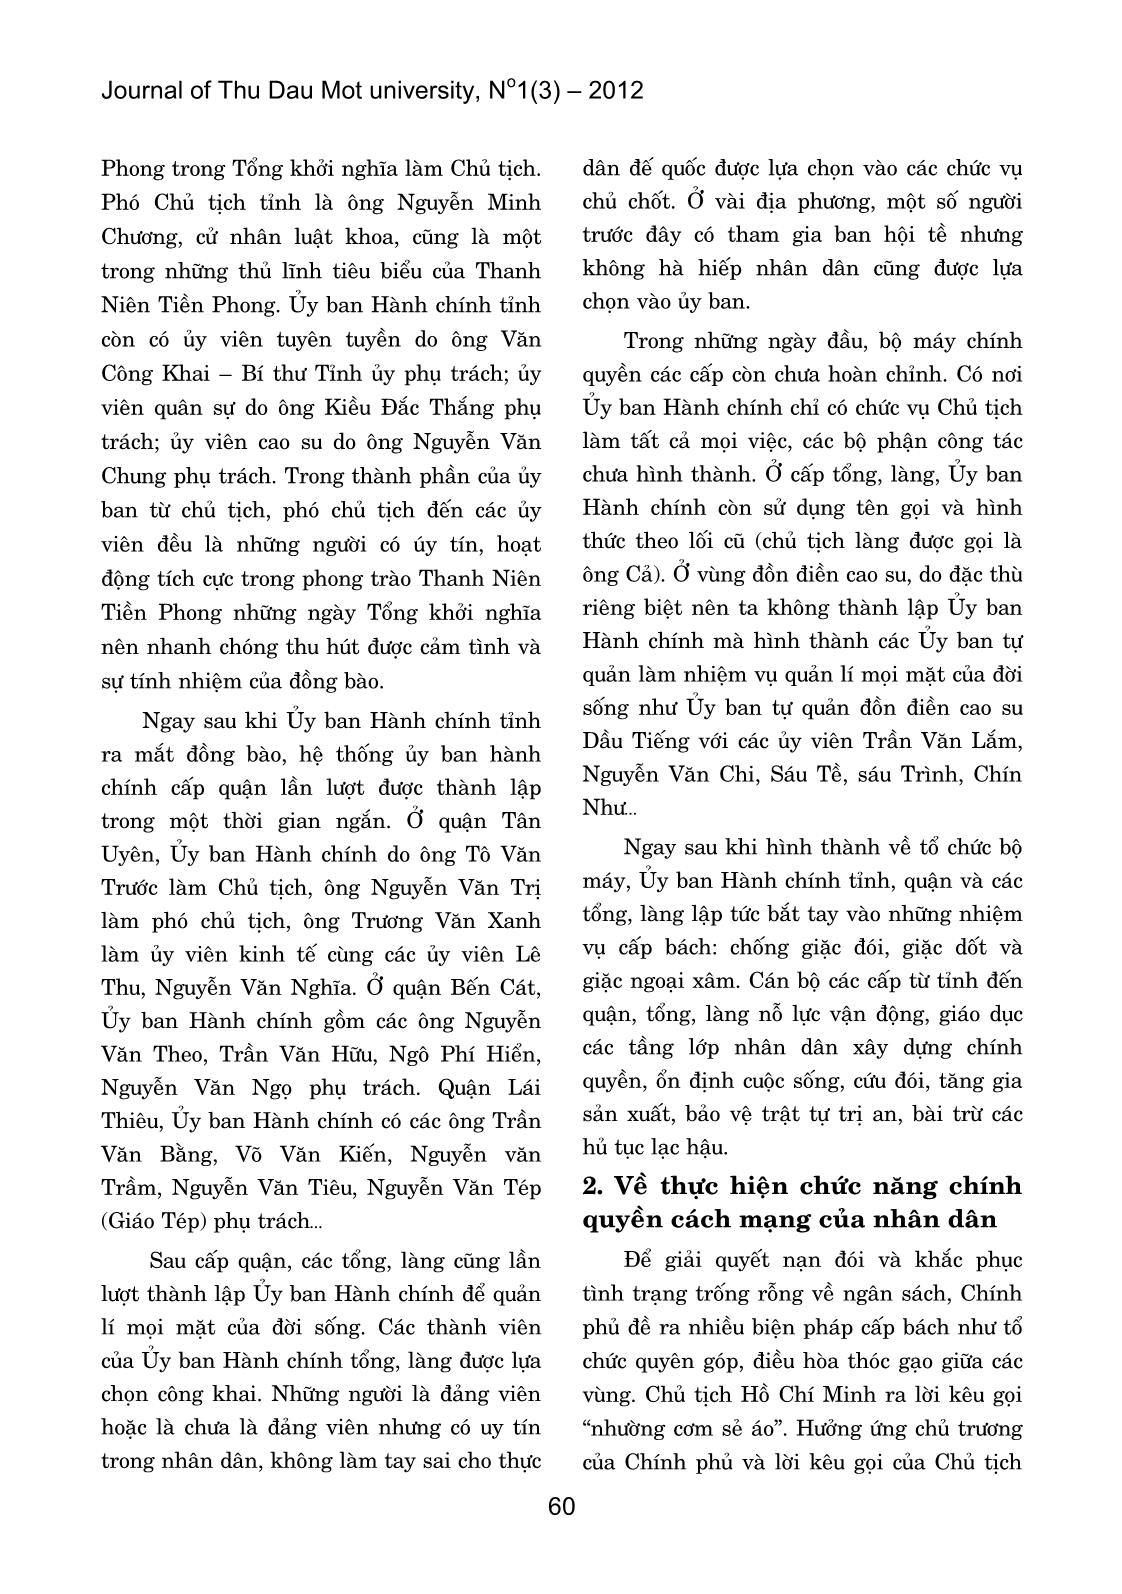 Mấy đặc điểm của chính quyền nhân dân tỉnh Bình Dương trong năm đầu sau cách mạng tháng tám 1945 trang 2